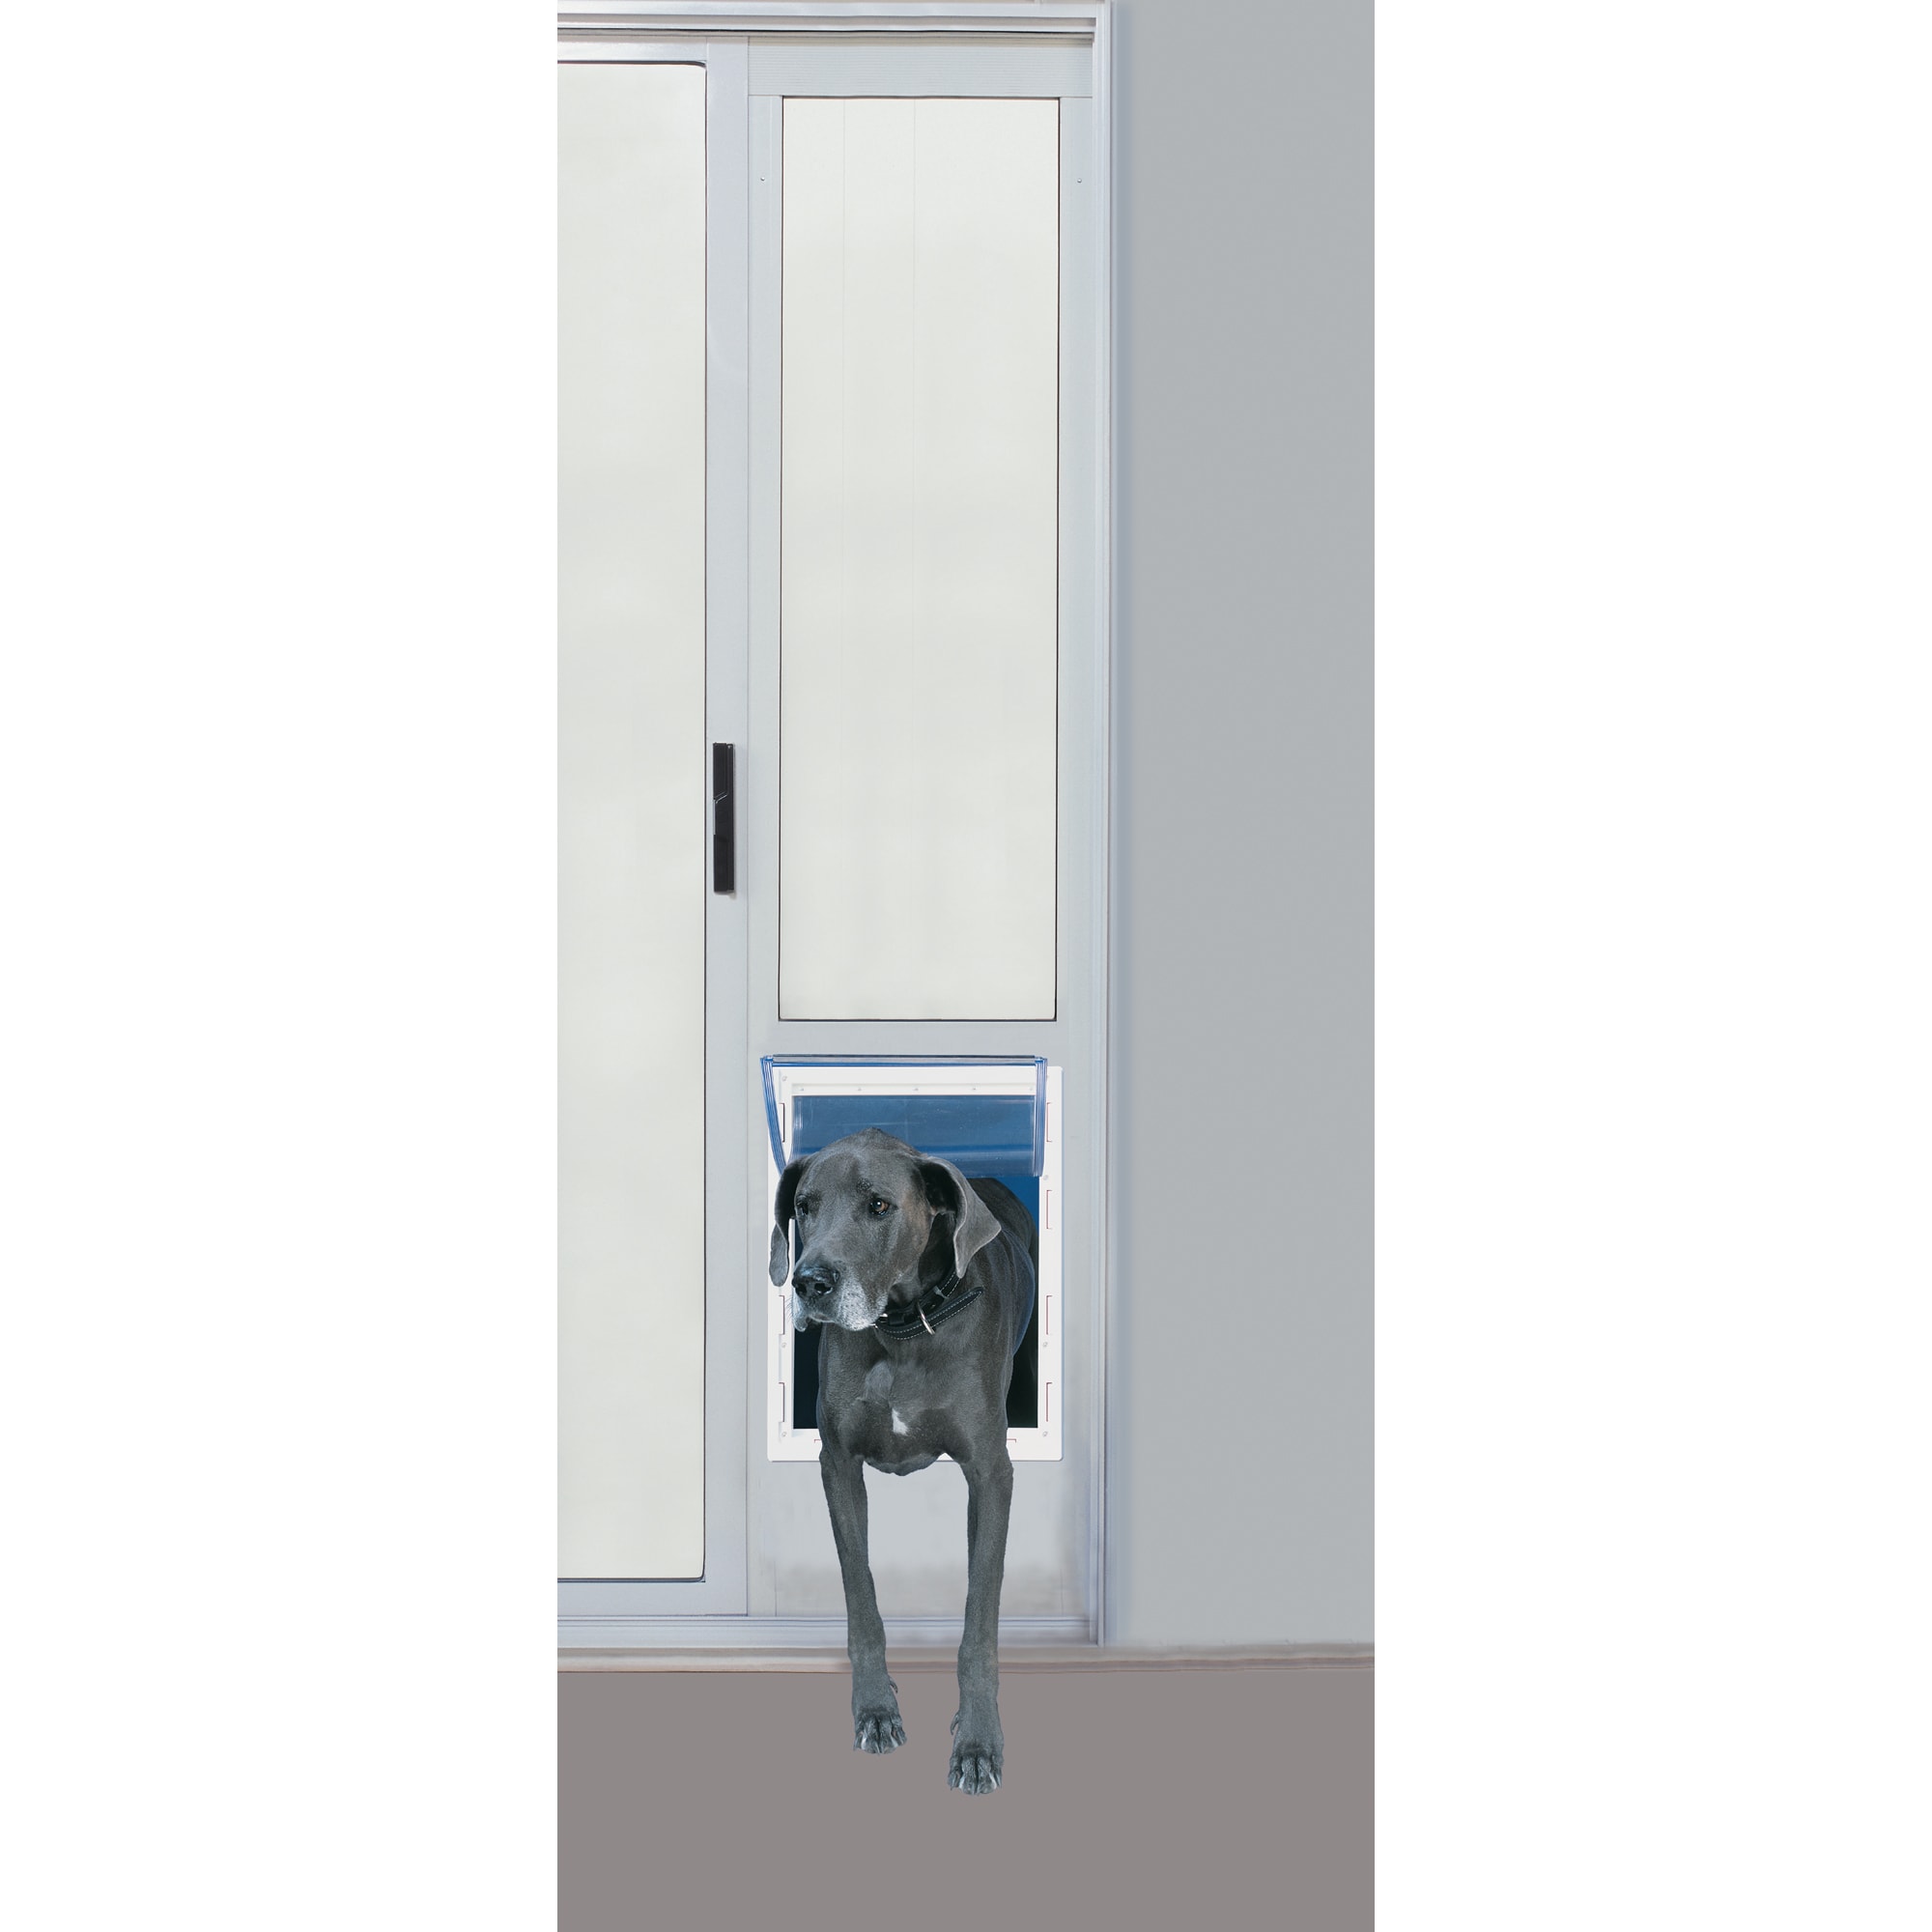 Doggie Cat 15 in Super Large White Aluminum Pet Patio Sliding Door x 20 in 